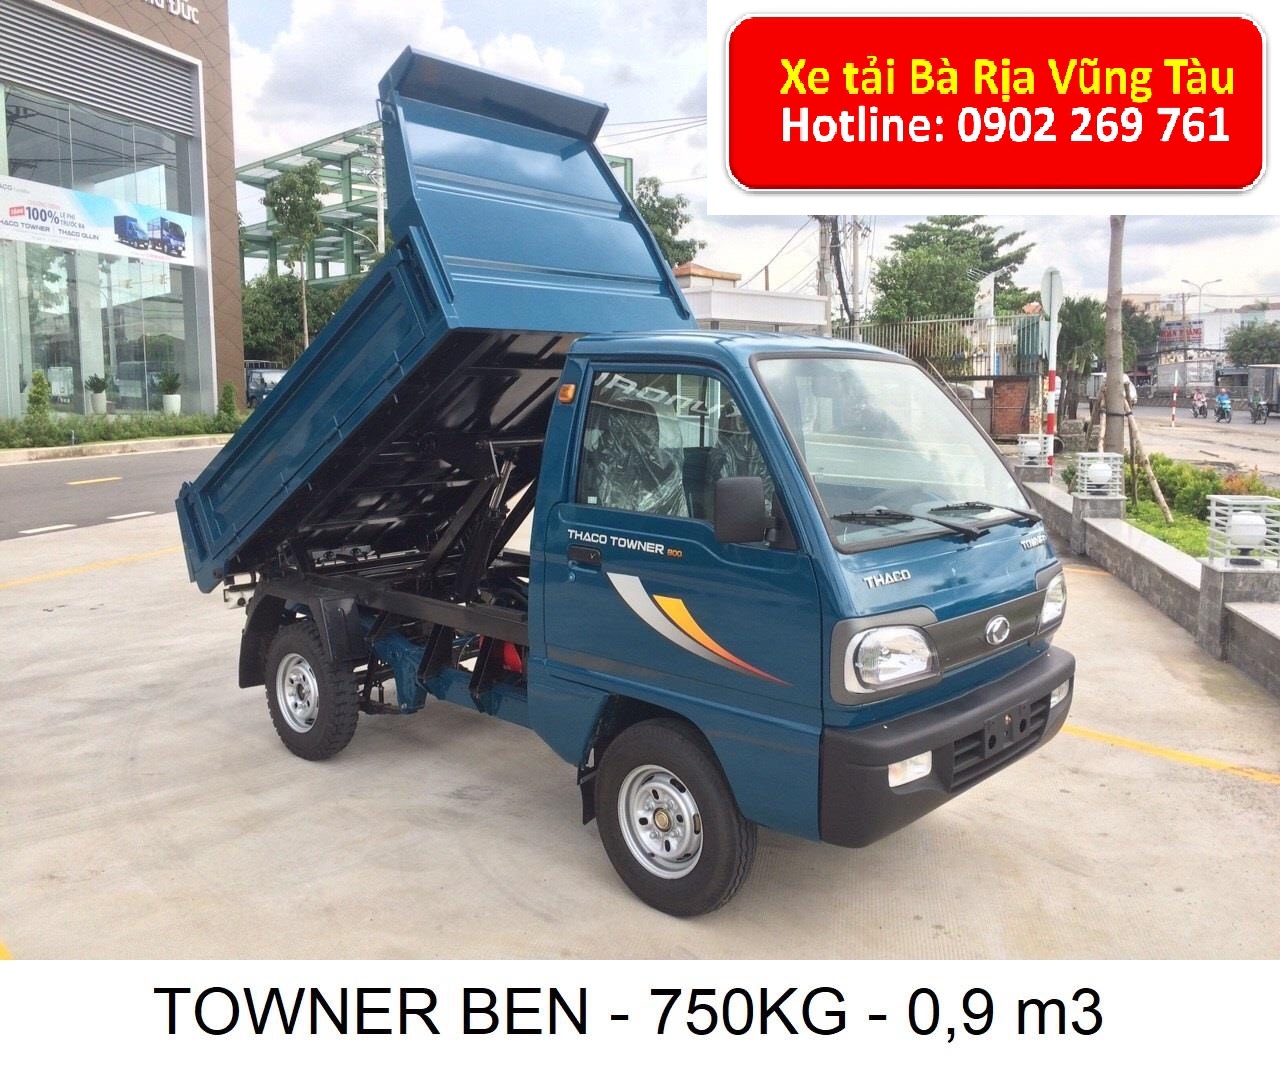 Chuyên xe tải, Ben Thaco Towner800 tải trọng 750kg, xe ben nhỏ 500kg, 750kg